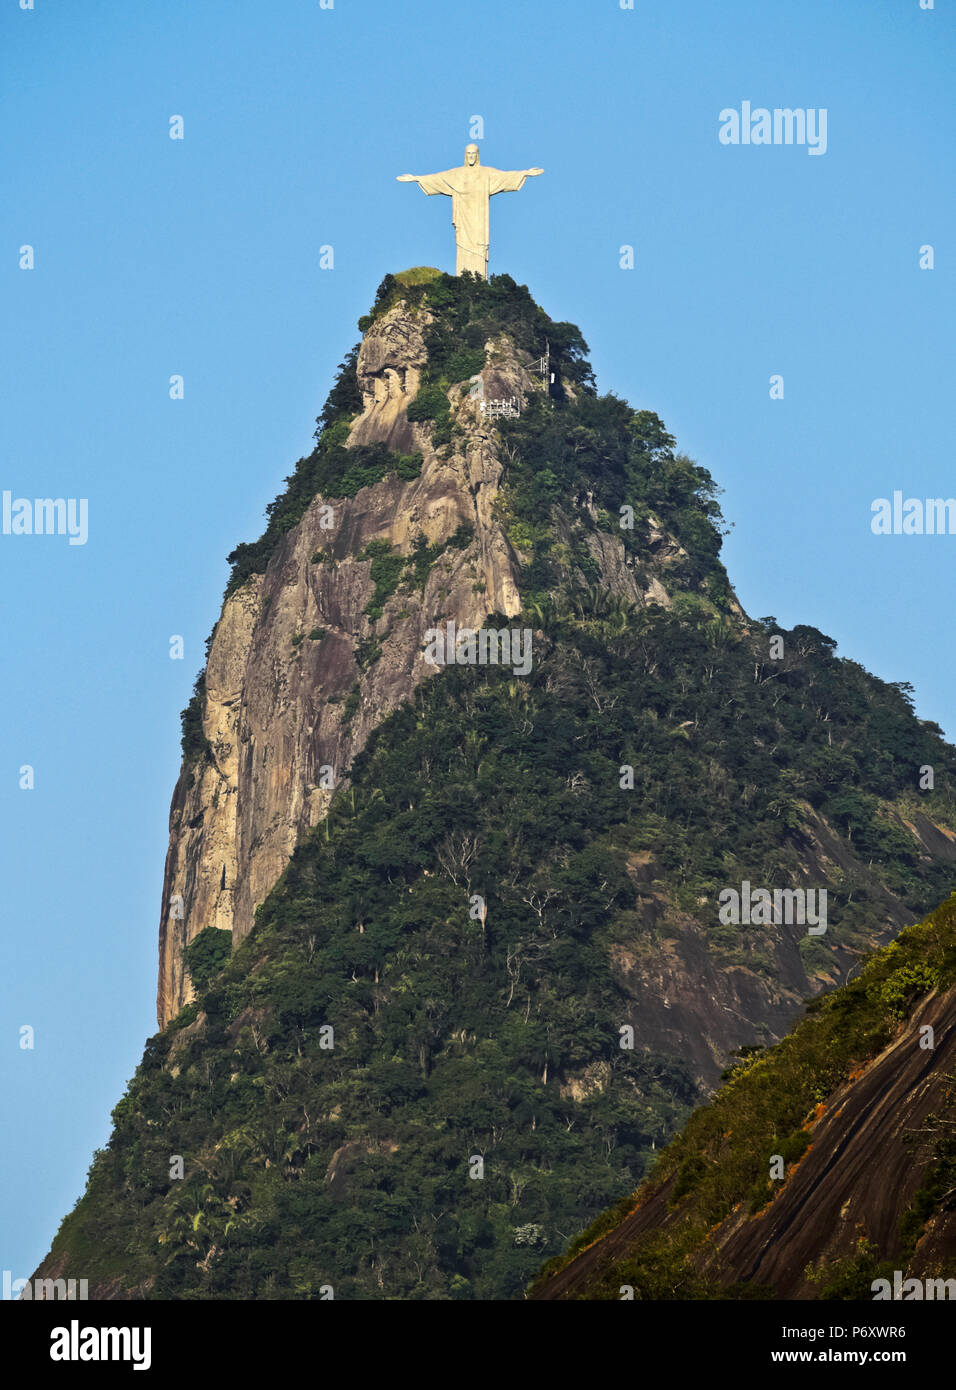 Brésil, Rio de Janeiro, Statue du Christ Rédempteur au sommet du Corcovado vue de Santa Marta. Banque D'Images